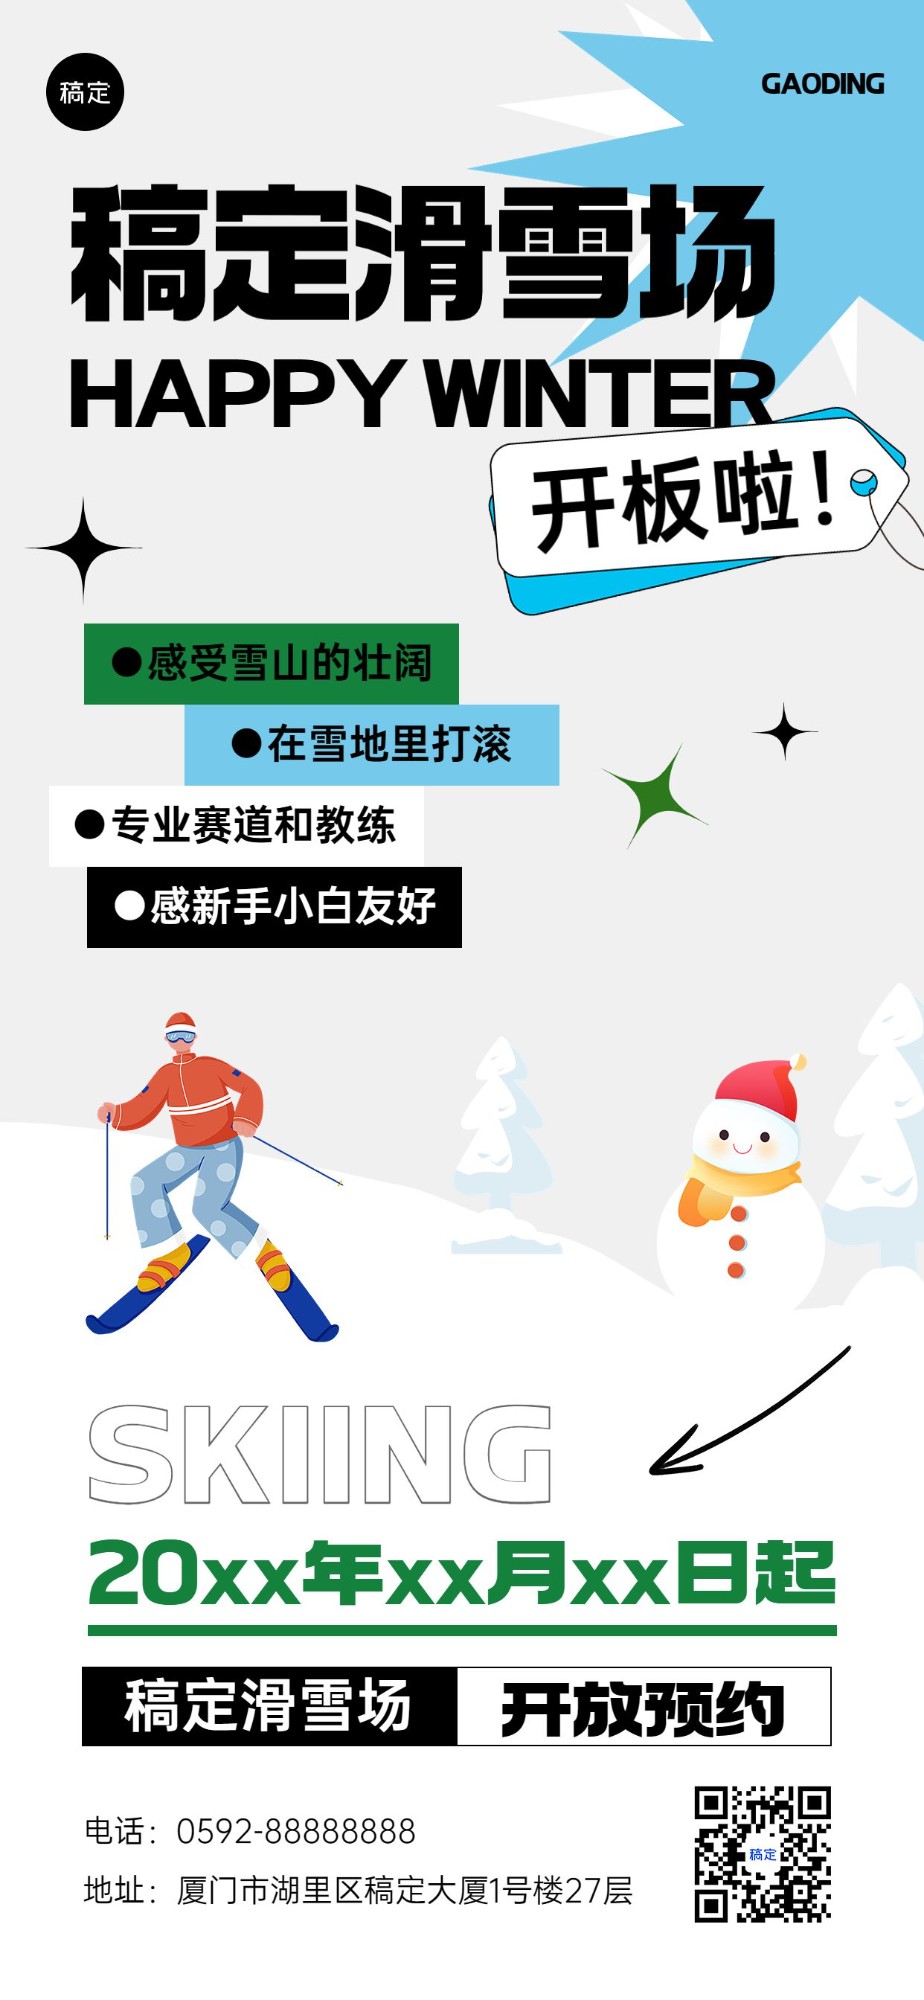 旅游出行滑雪景区景点预约指南全屏竖版海报预览效果